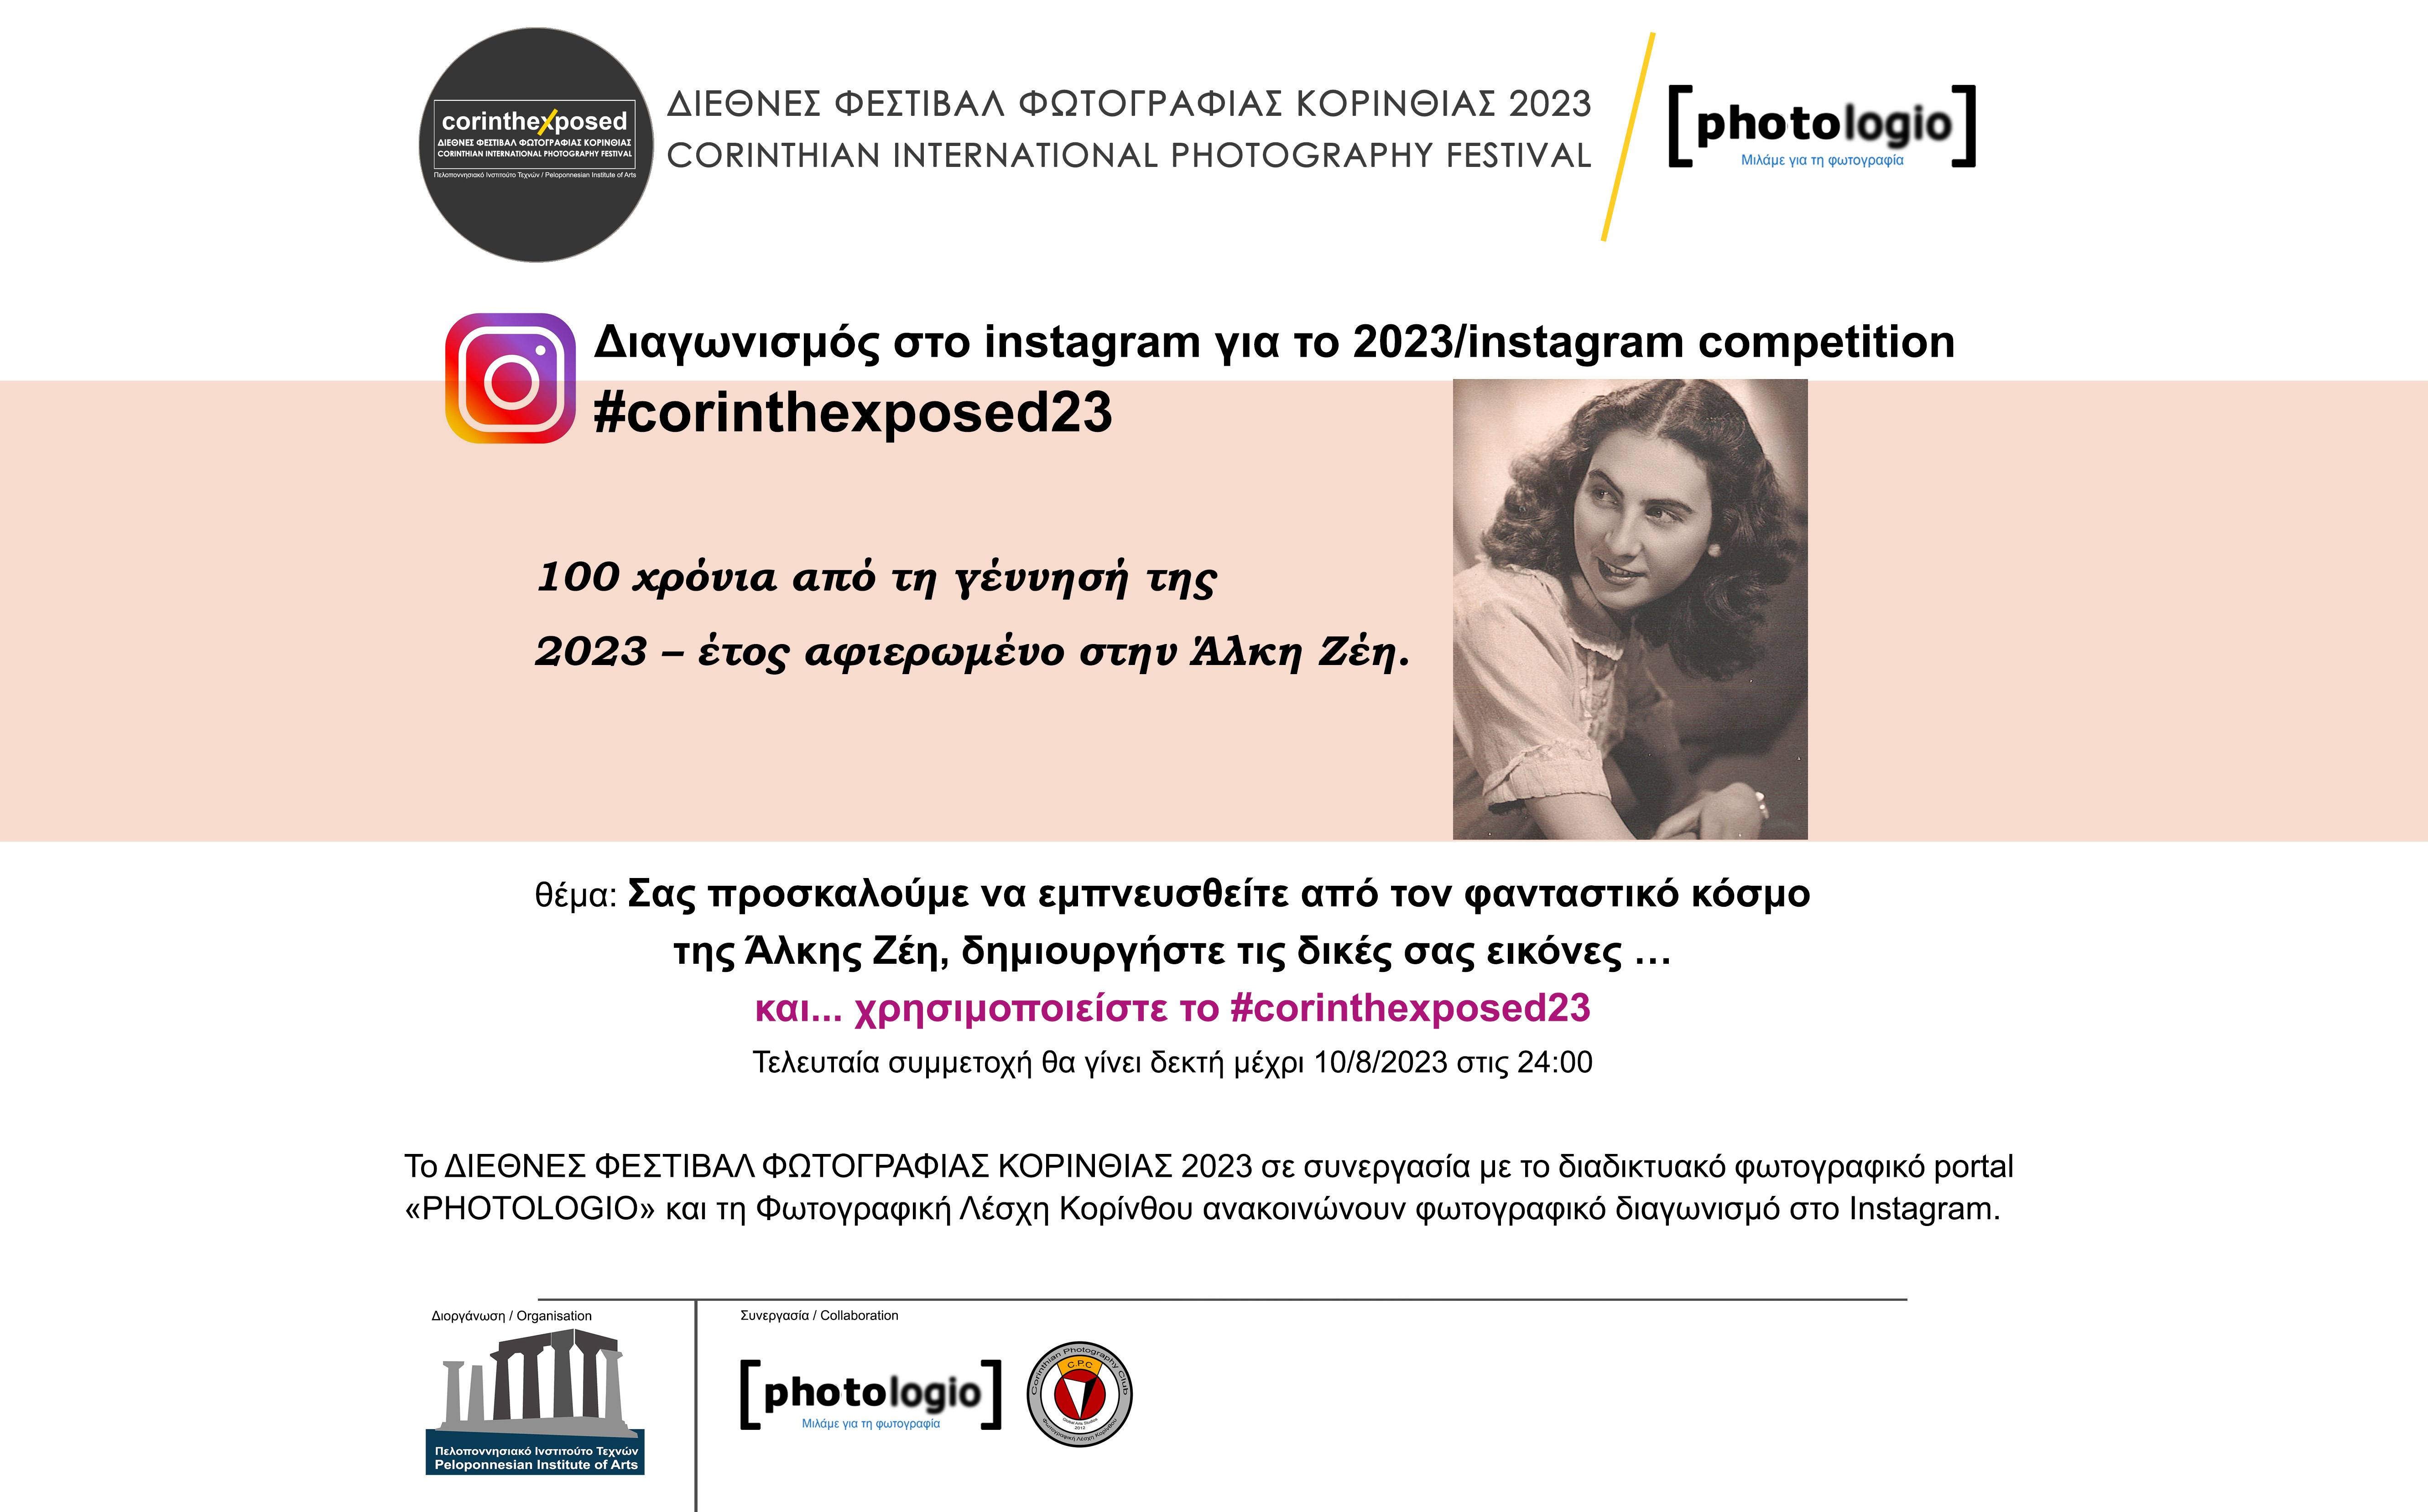 Διαγωνισμός στο Instagram 2023